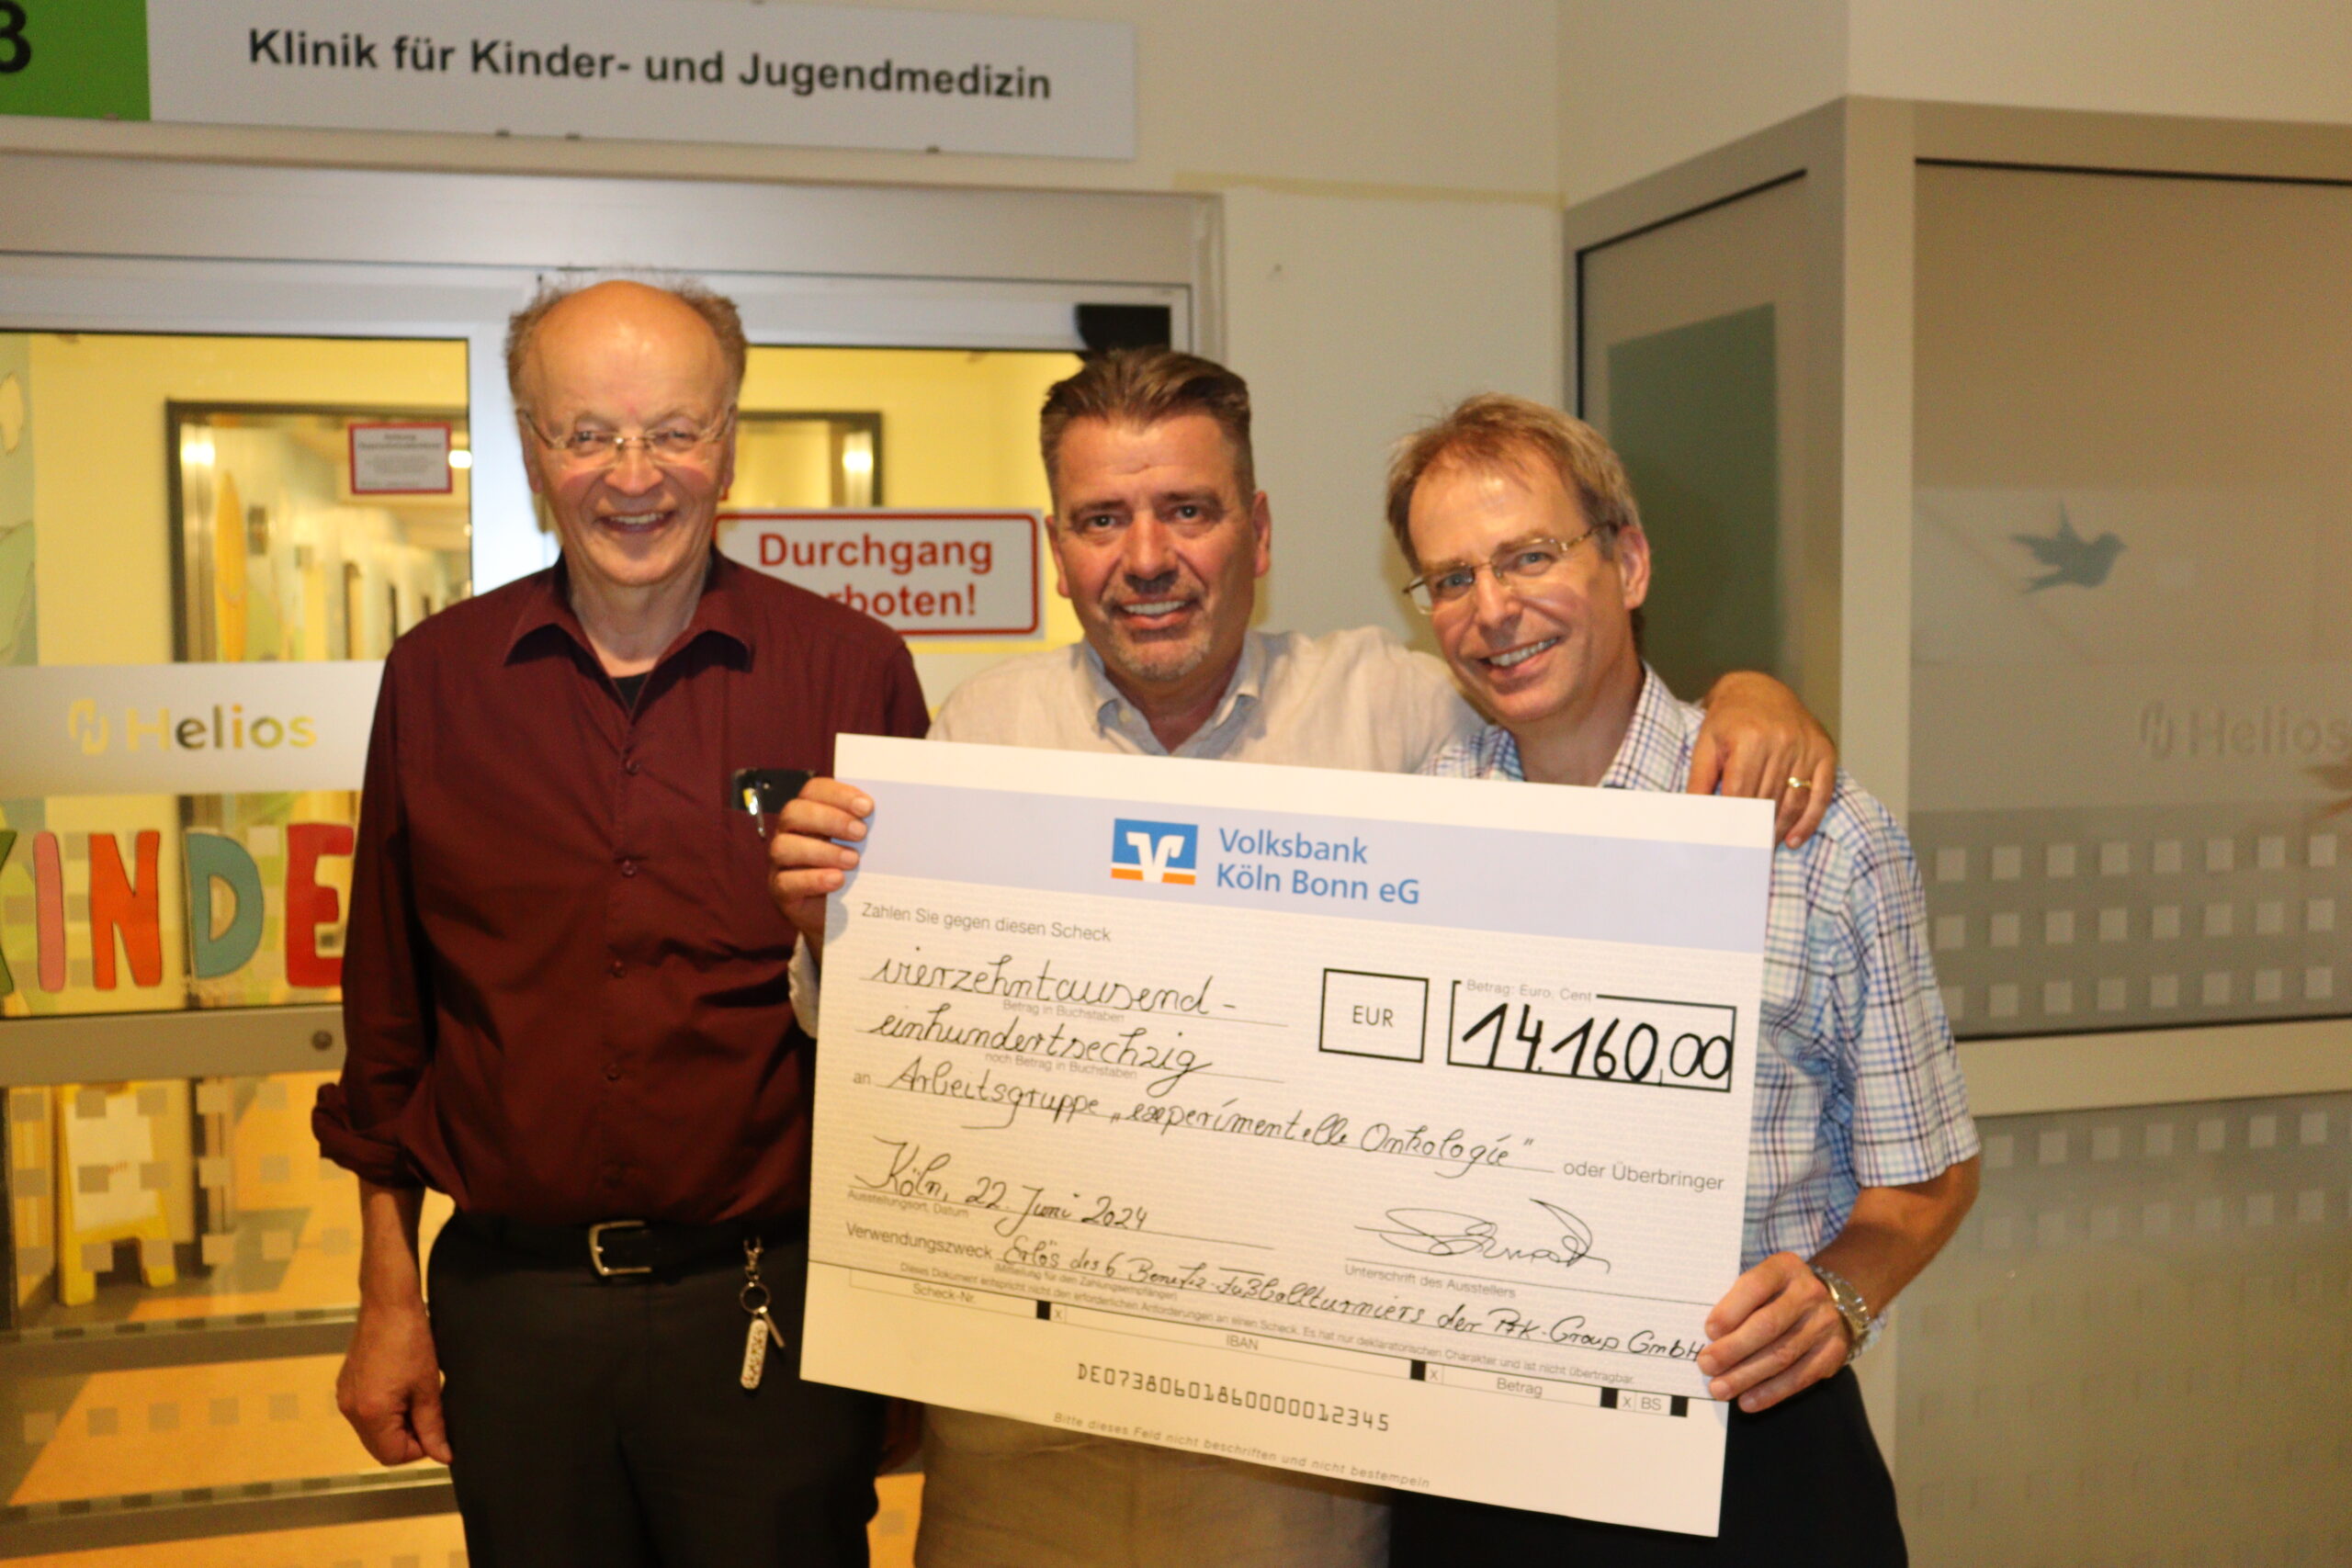 Herzensangelegenheit: Kölner Unternehmer spendet 14.160 Euro an Schweriner Kinderklinik 